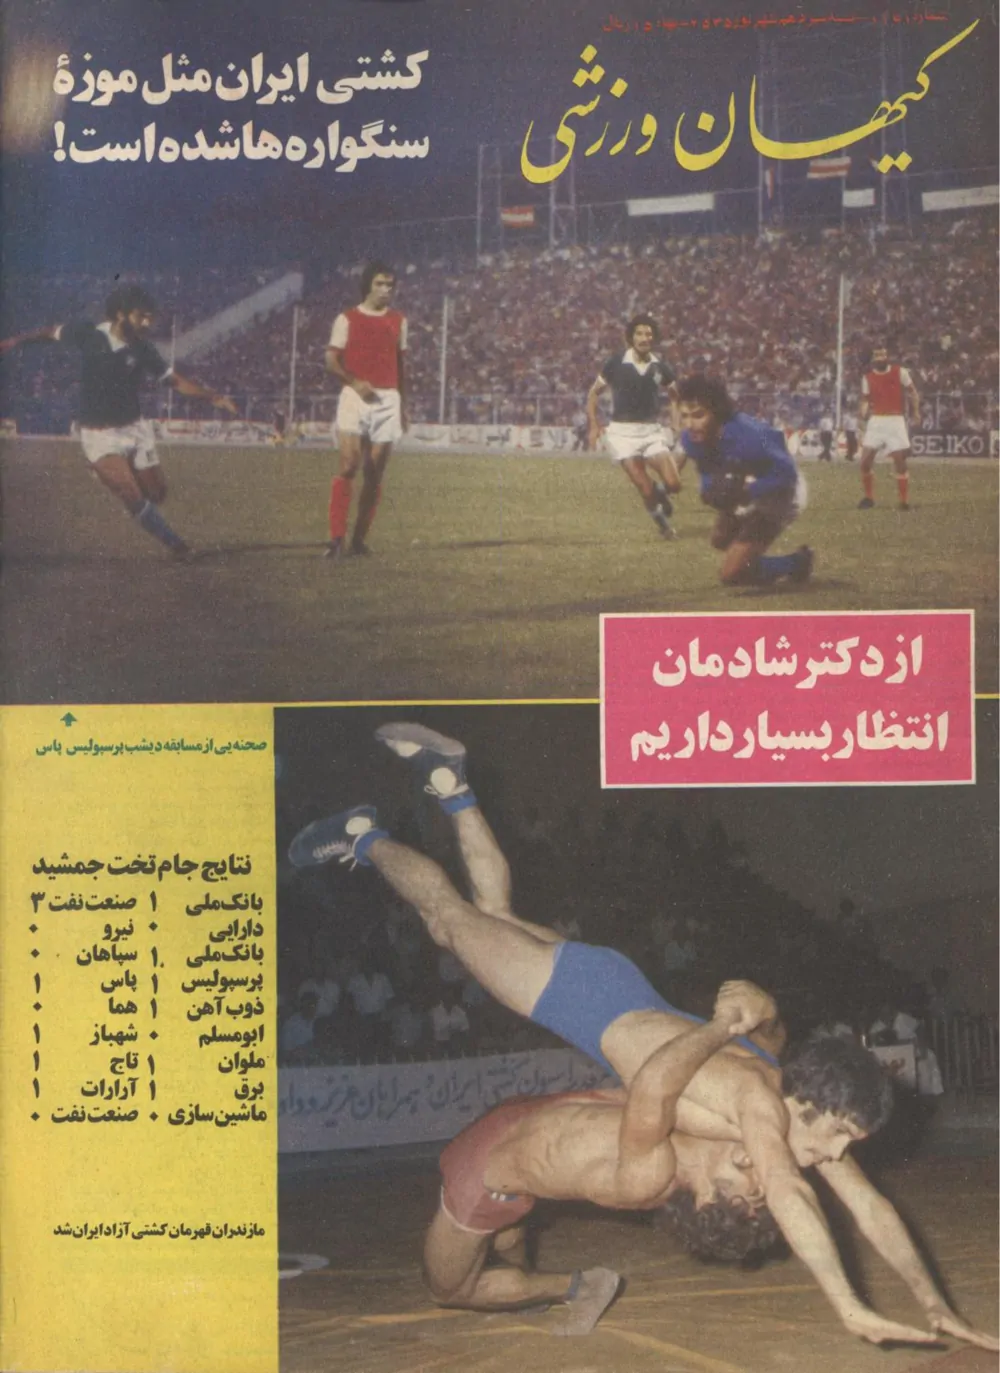 کیهان ورزشی - شماره 1161 - شهریور 1355